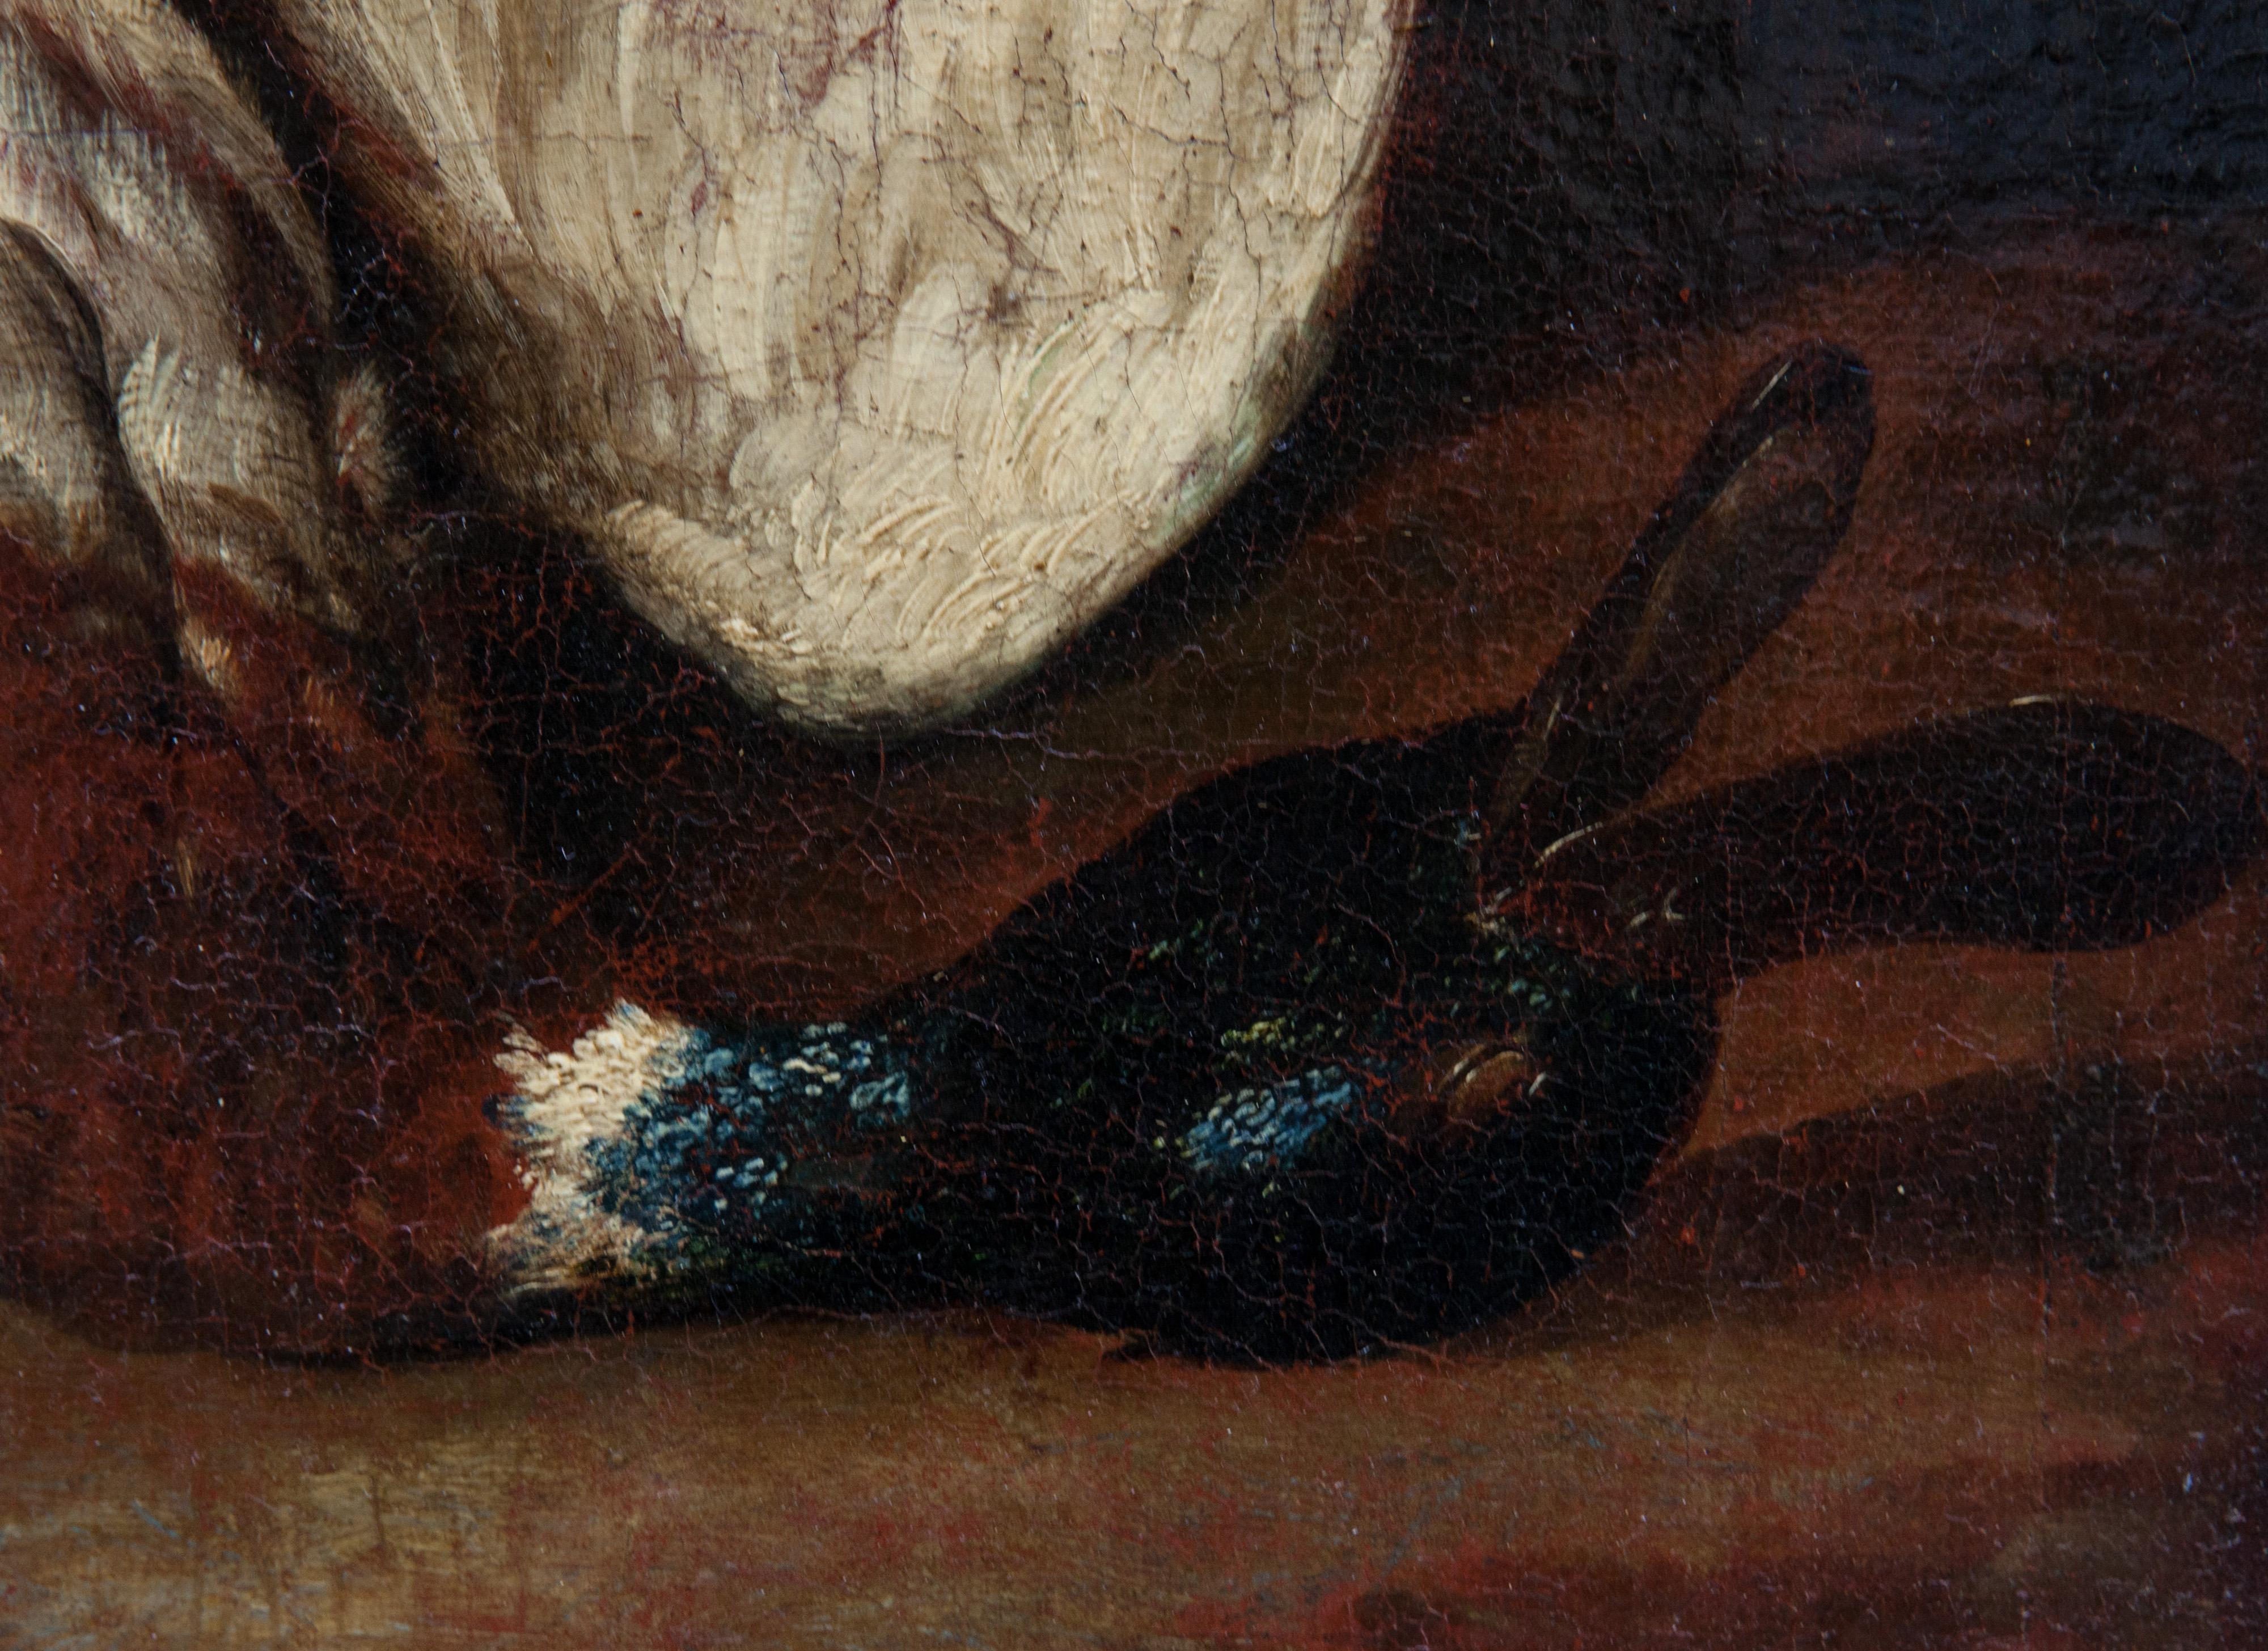 Stillleben der Jagd, Monsù Aurora (1610-1675 oder 1691), zugeschrieben.

Öl auf Leinwand.

Abmessungen: 78 cm x 60 cm

KOSTENLOSER VERSAND IN EUROPA

Wenn Sie sich für barocke Kunst begeistern, wird dieses Stillleben aus der Mitte des 17.